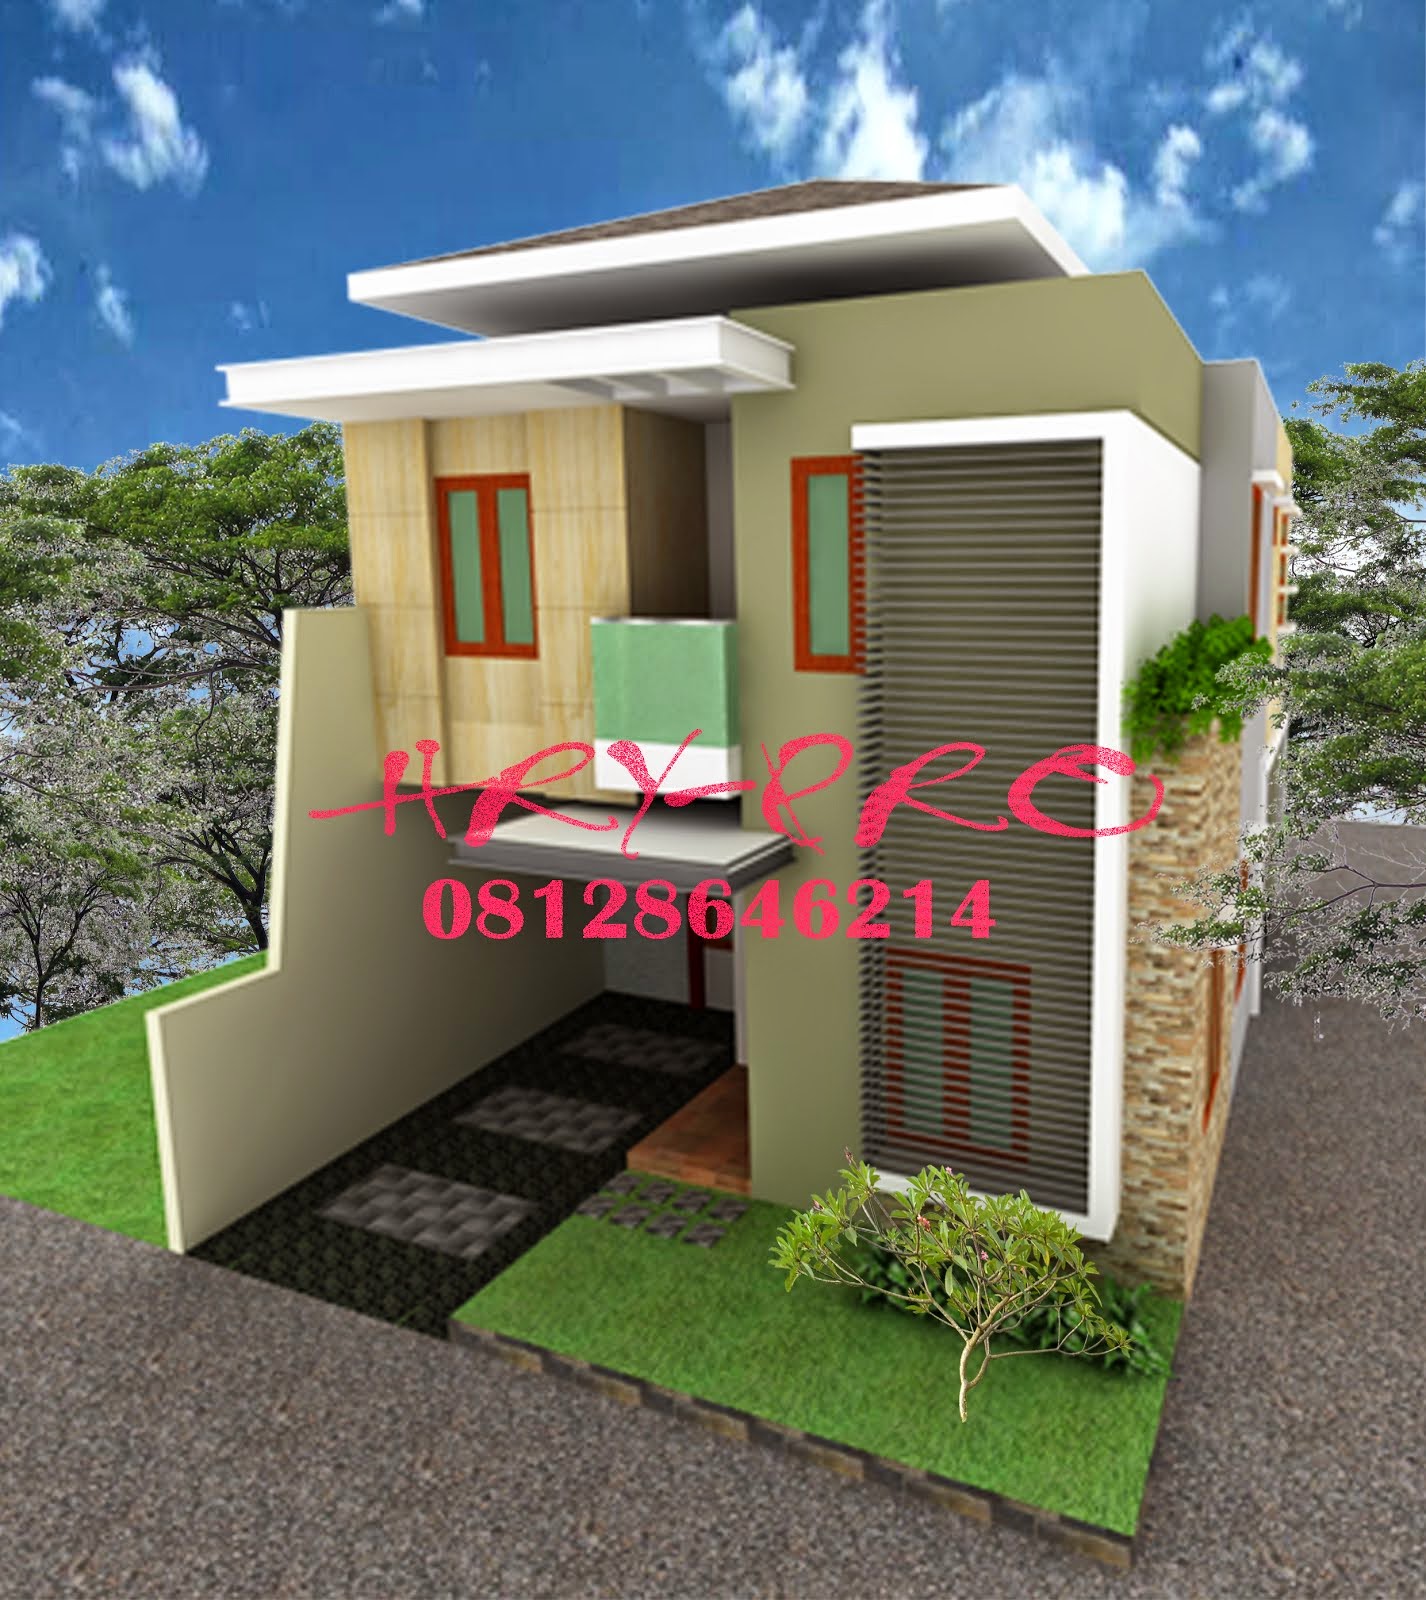 Rancang Bangun Baru, Renovasi & Jasa Gambar Design Rumah, Ruko, Gudang